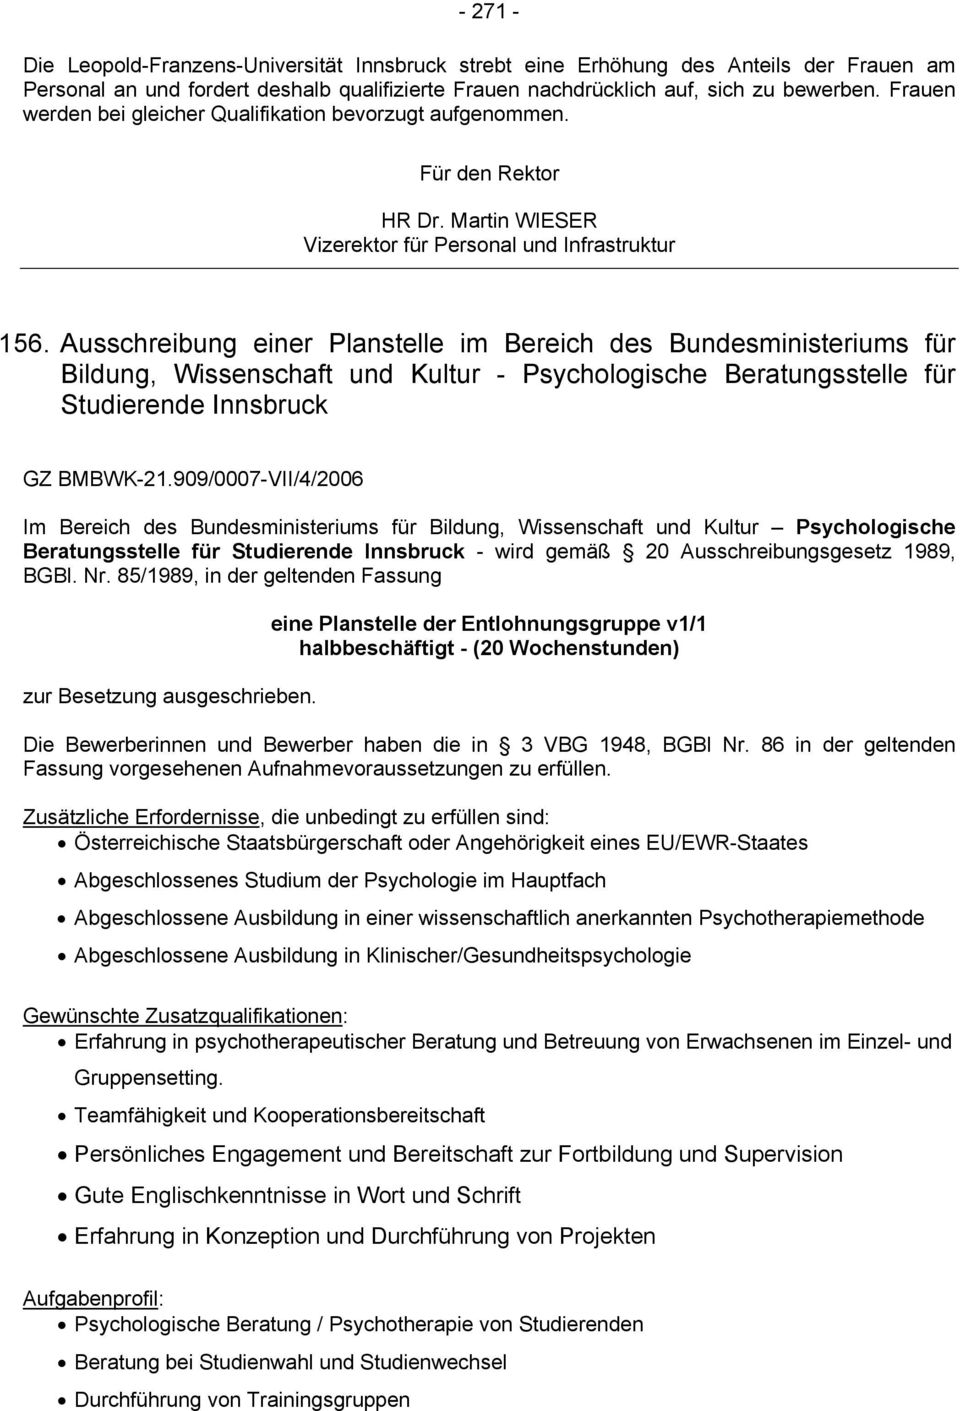 Ausschreibung einer Planstelle im Bereich des Bundesministeriums für Bildung, Wissenschaft und Kultur - Psychologische Beratungsstelle für Studierende Innsbruck GZ BMBWK-21.